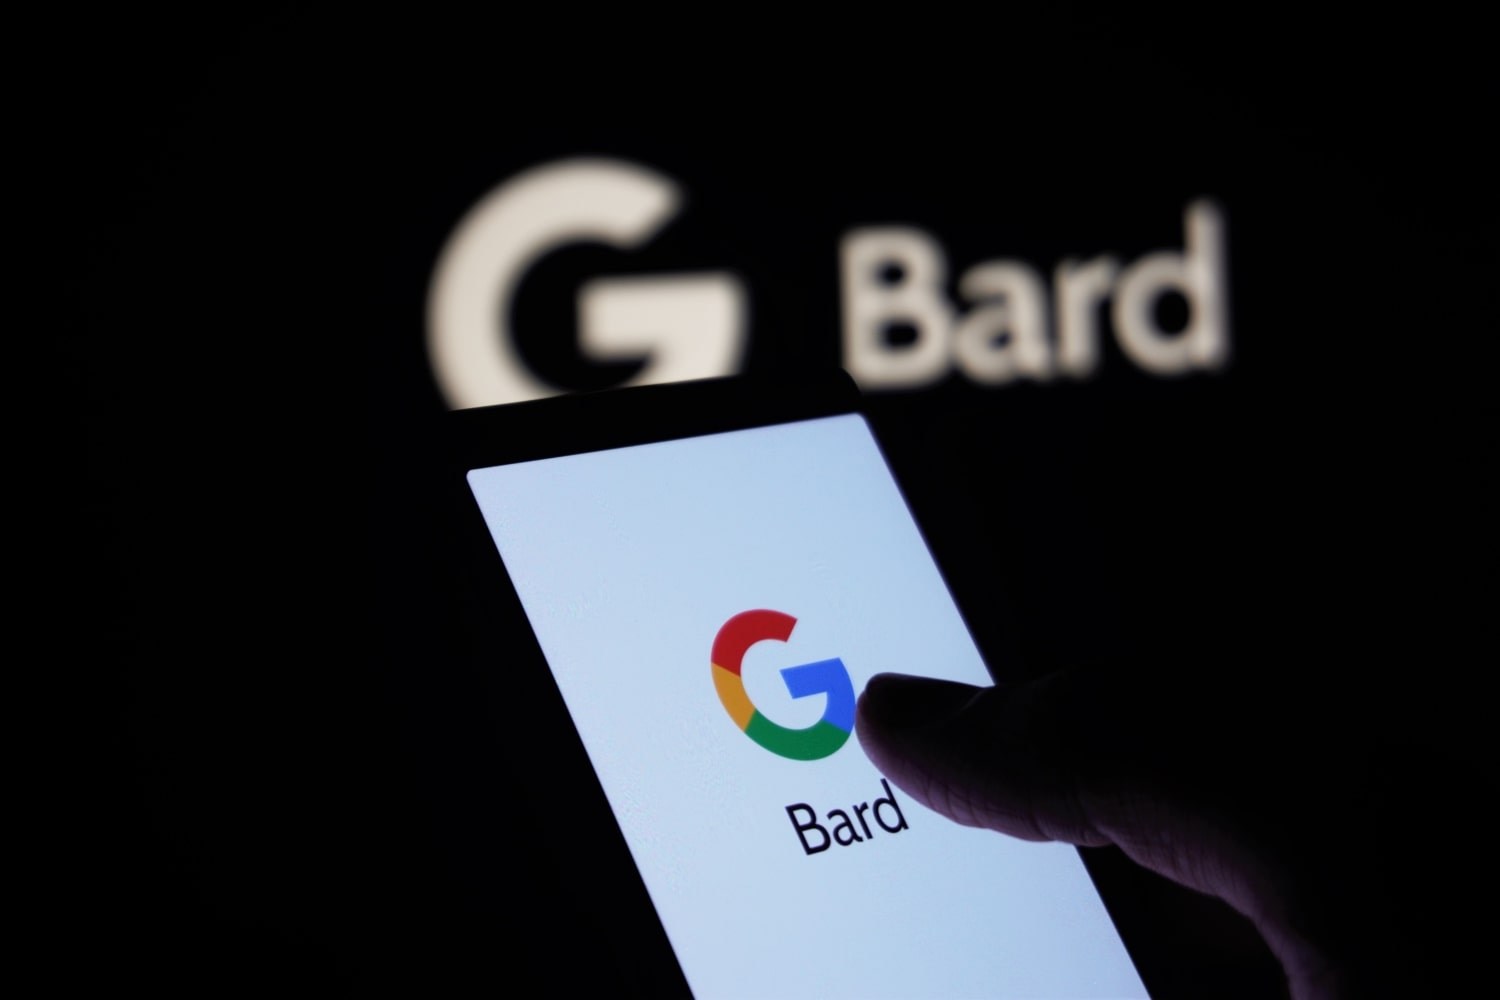 Una persona sostiene un teléfono con el logotipo de Google y la palabra 'Bard' en la pantalla. En el fondo hay un logotipo de Google Bard.